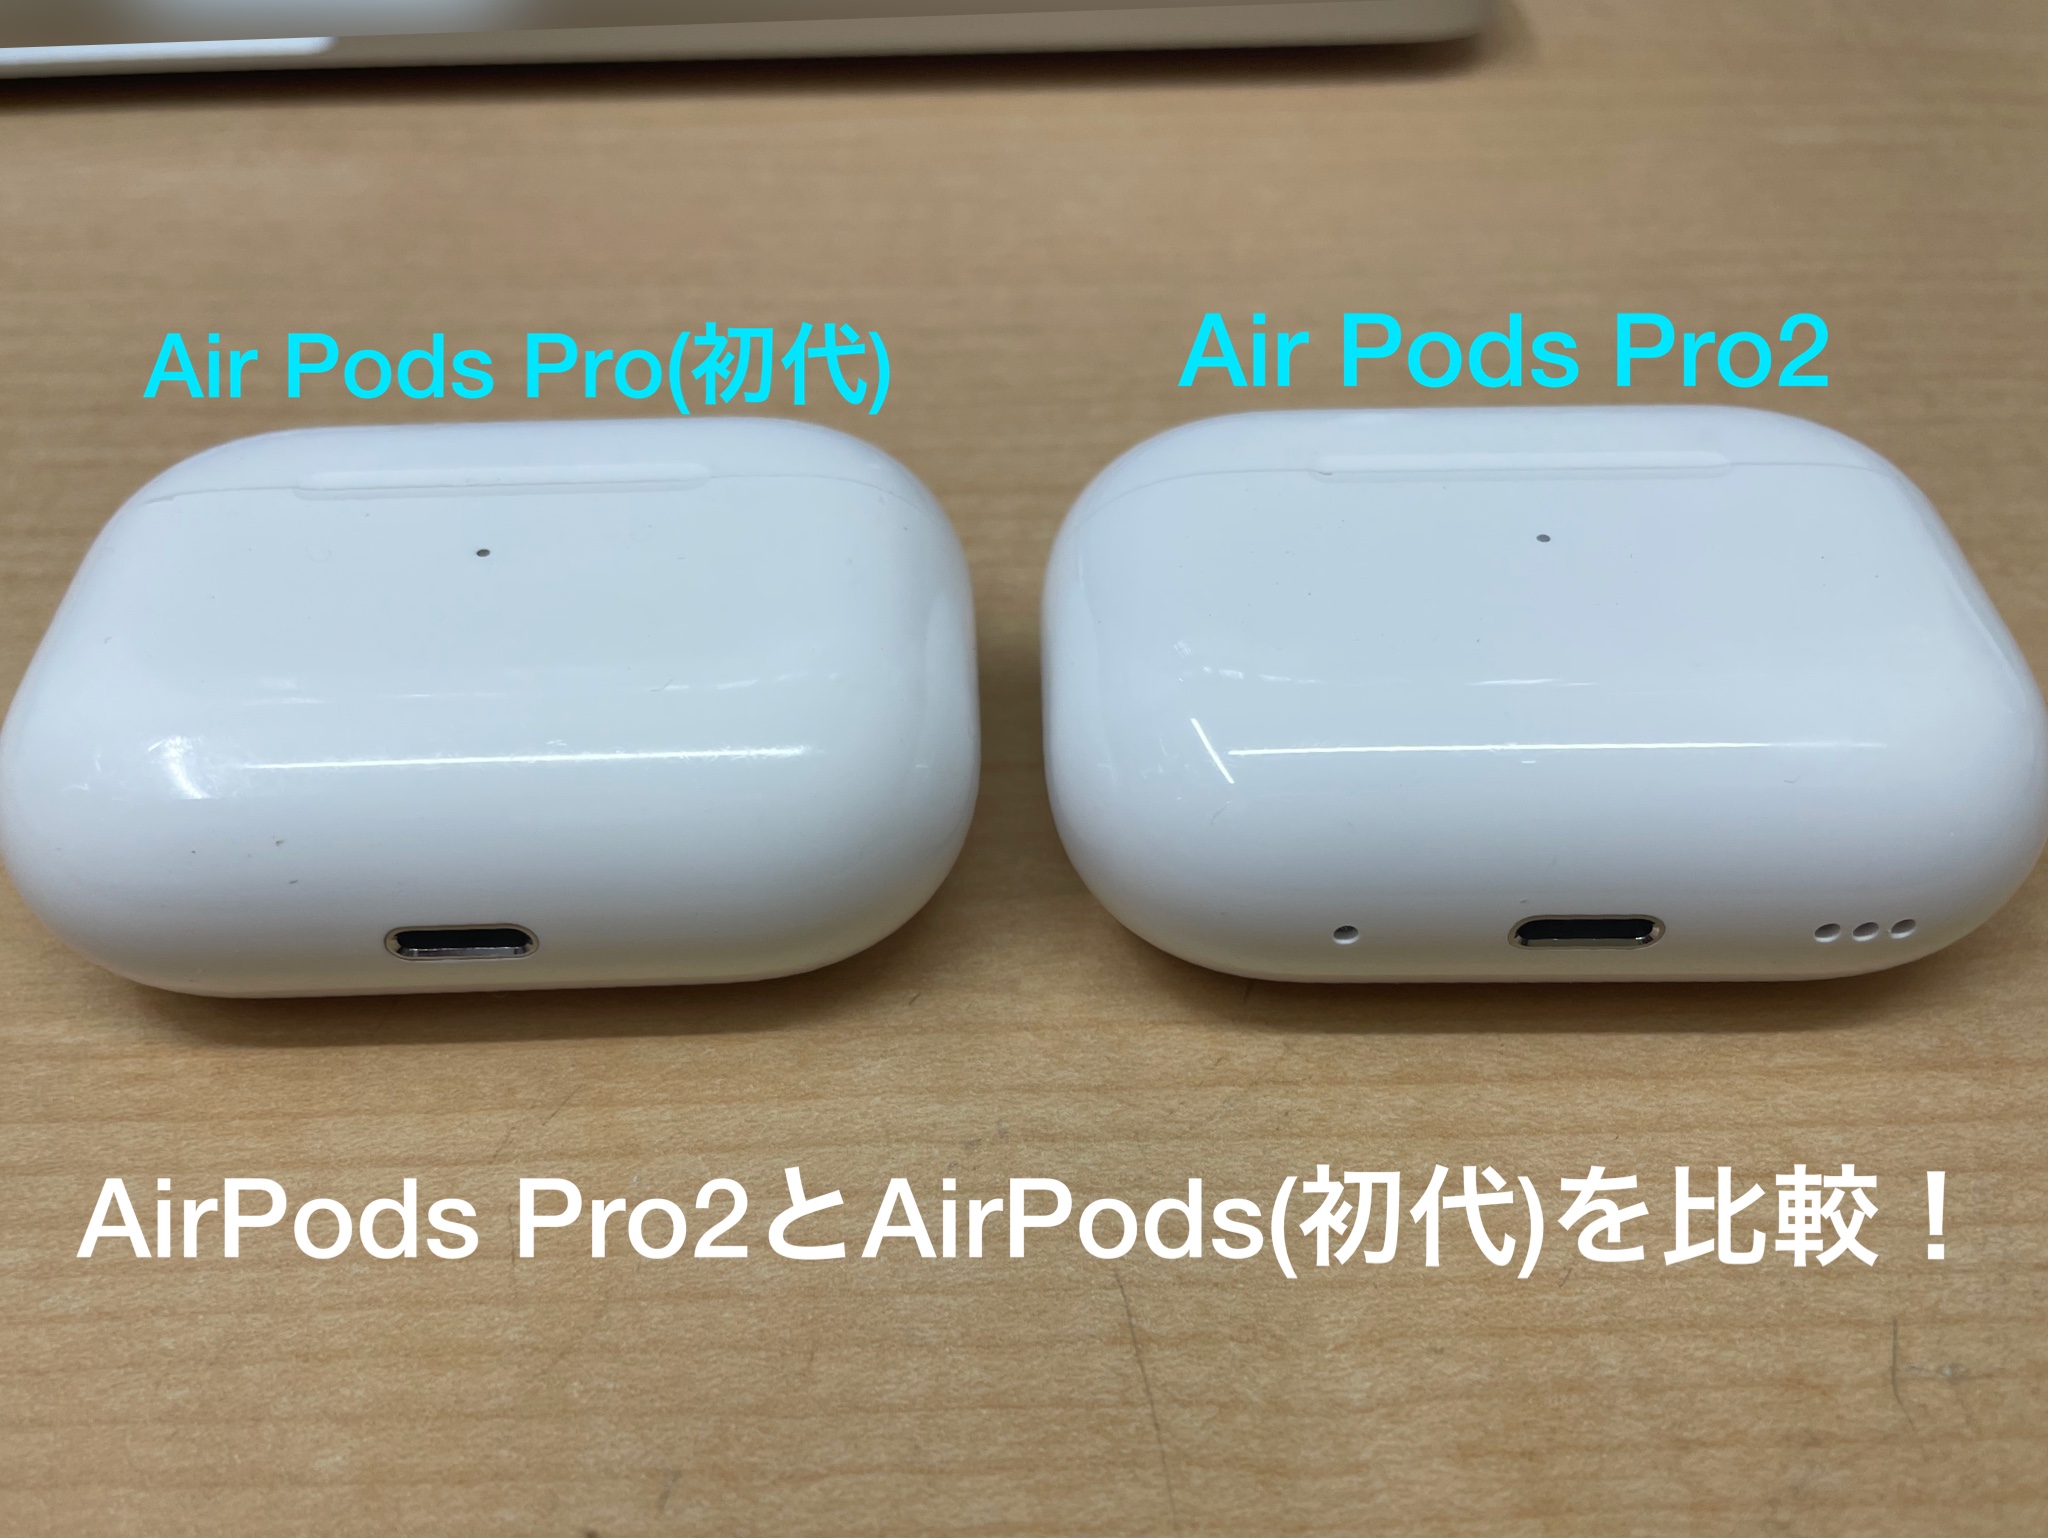 パワーアップした【AirPodsPro2】は【AirPodsPro】と比べて何が変わっ